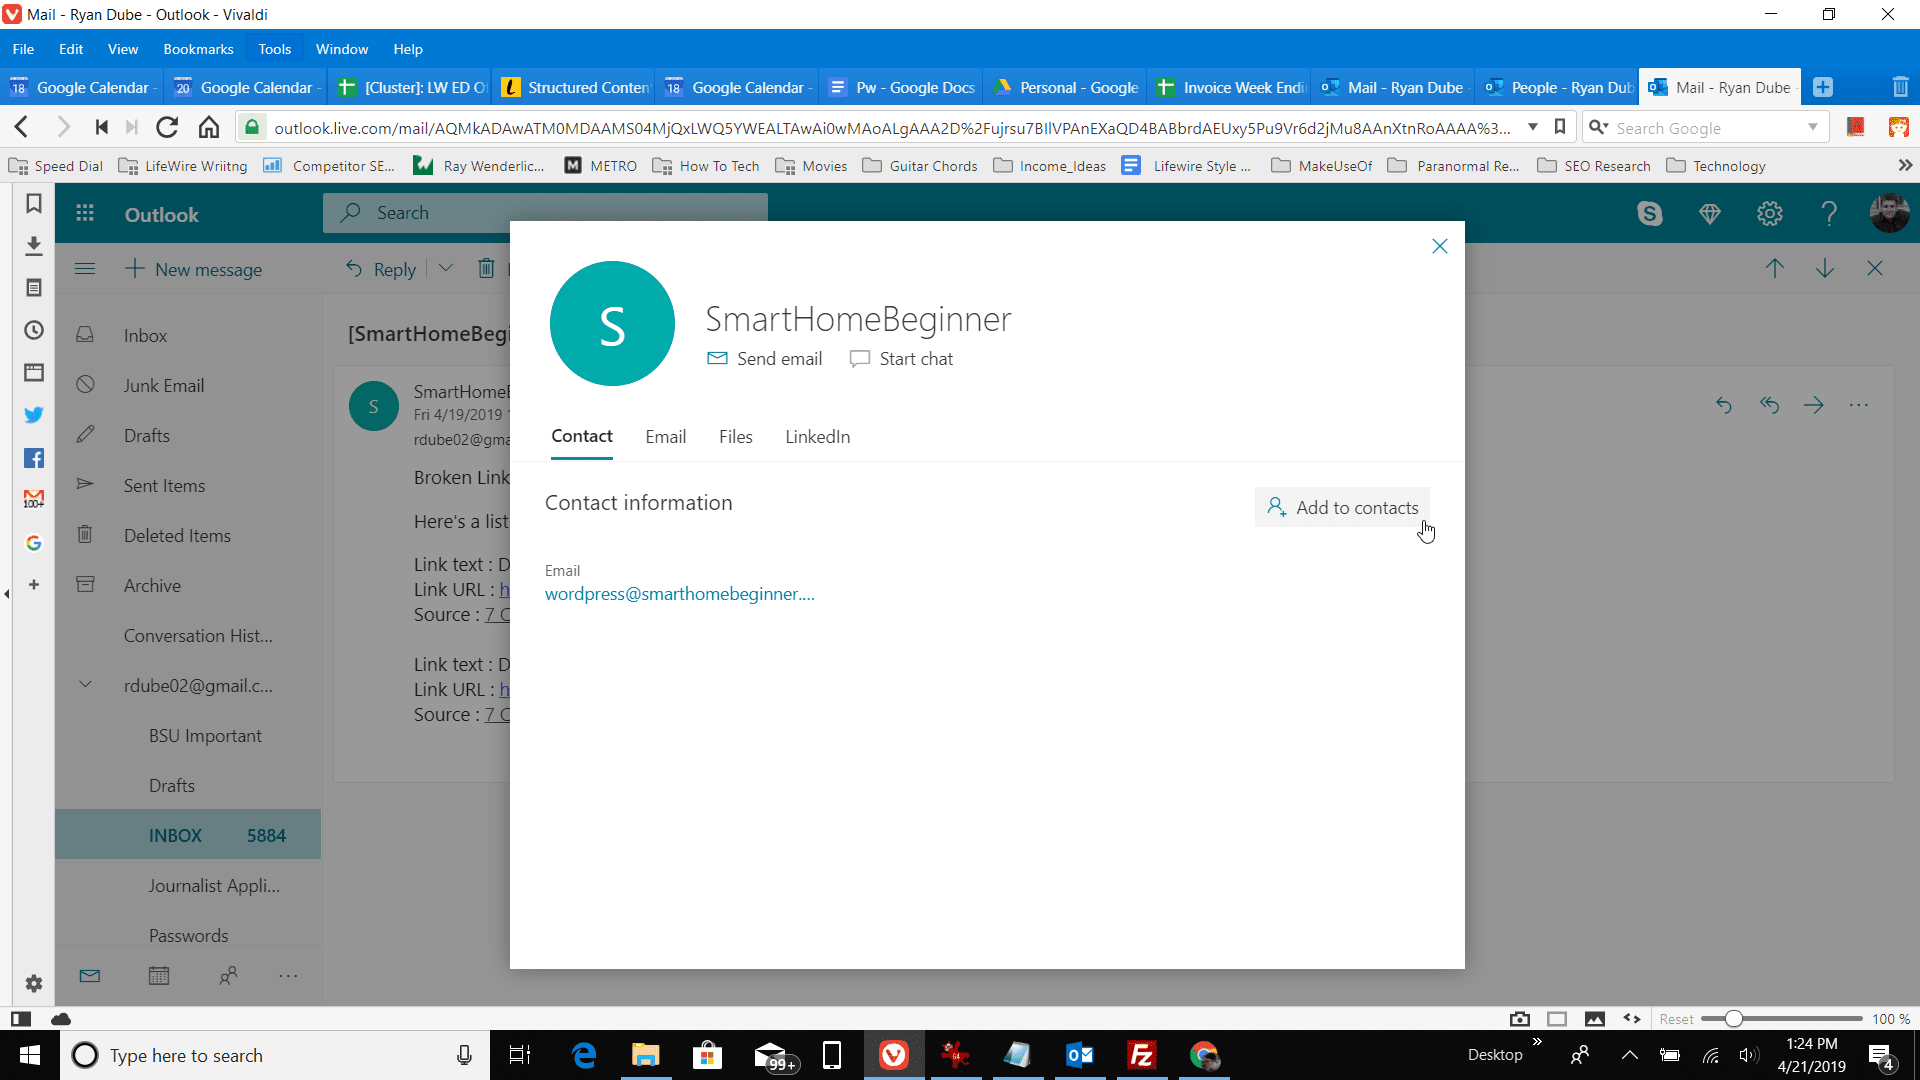 Captura de tela da janela de adição de contato no Outlook.com